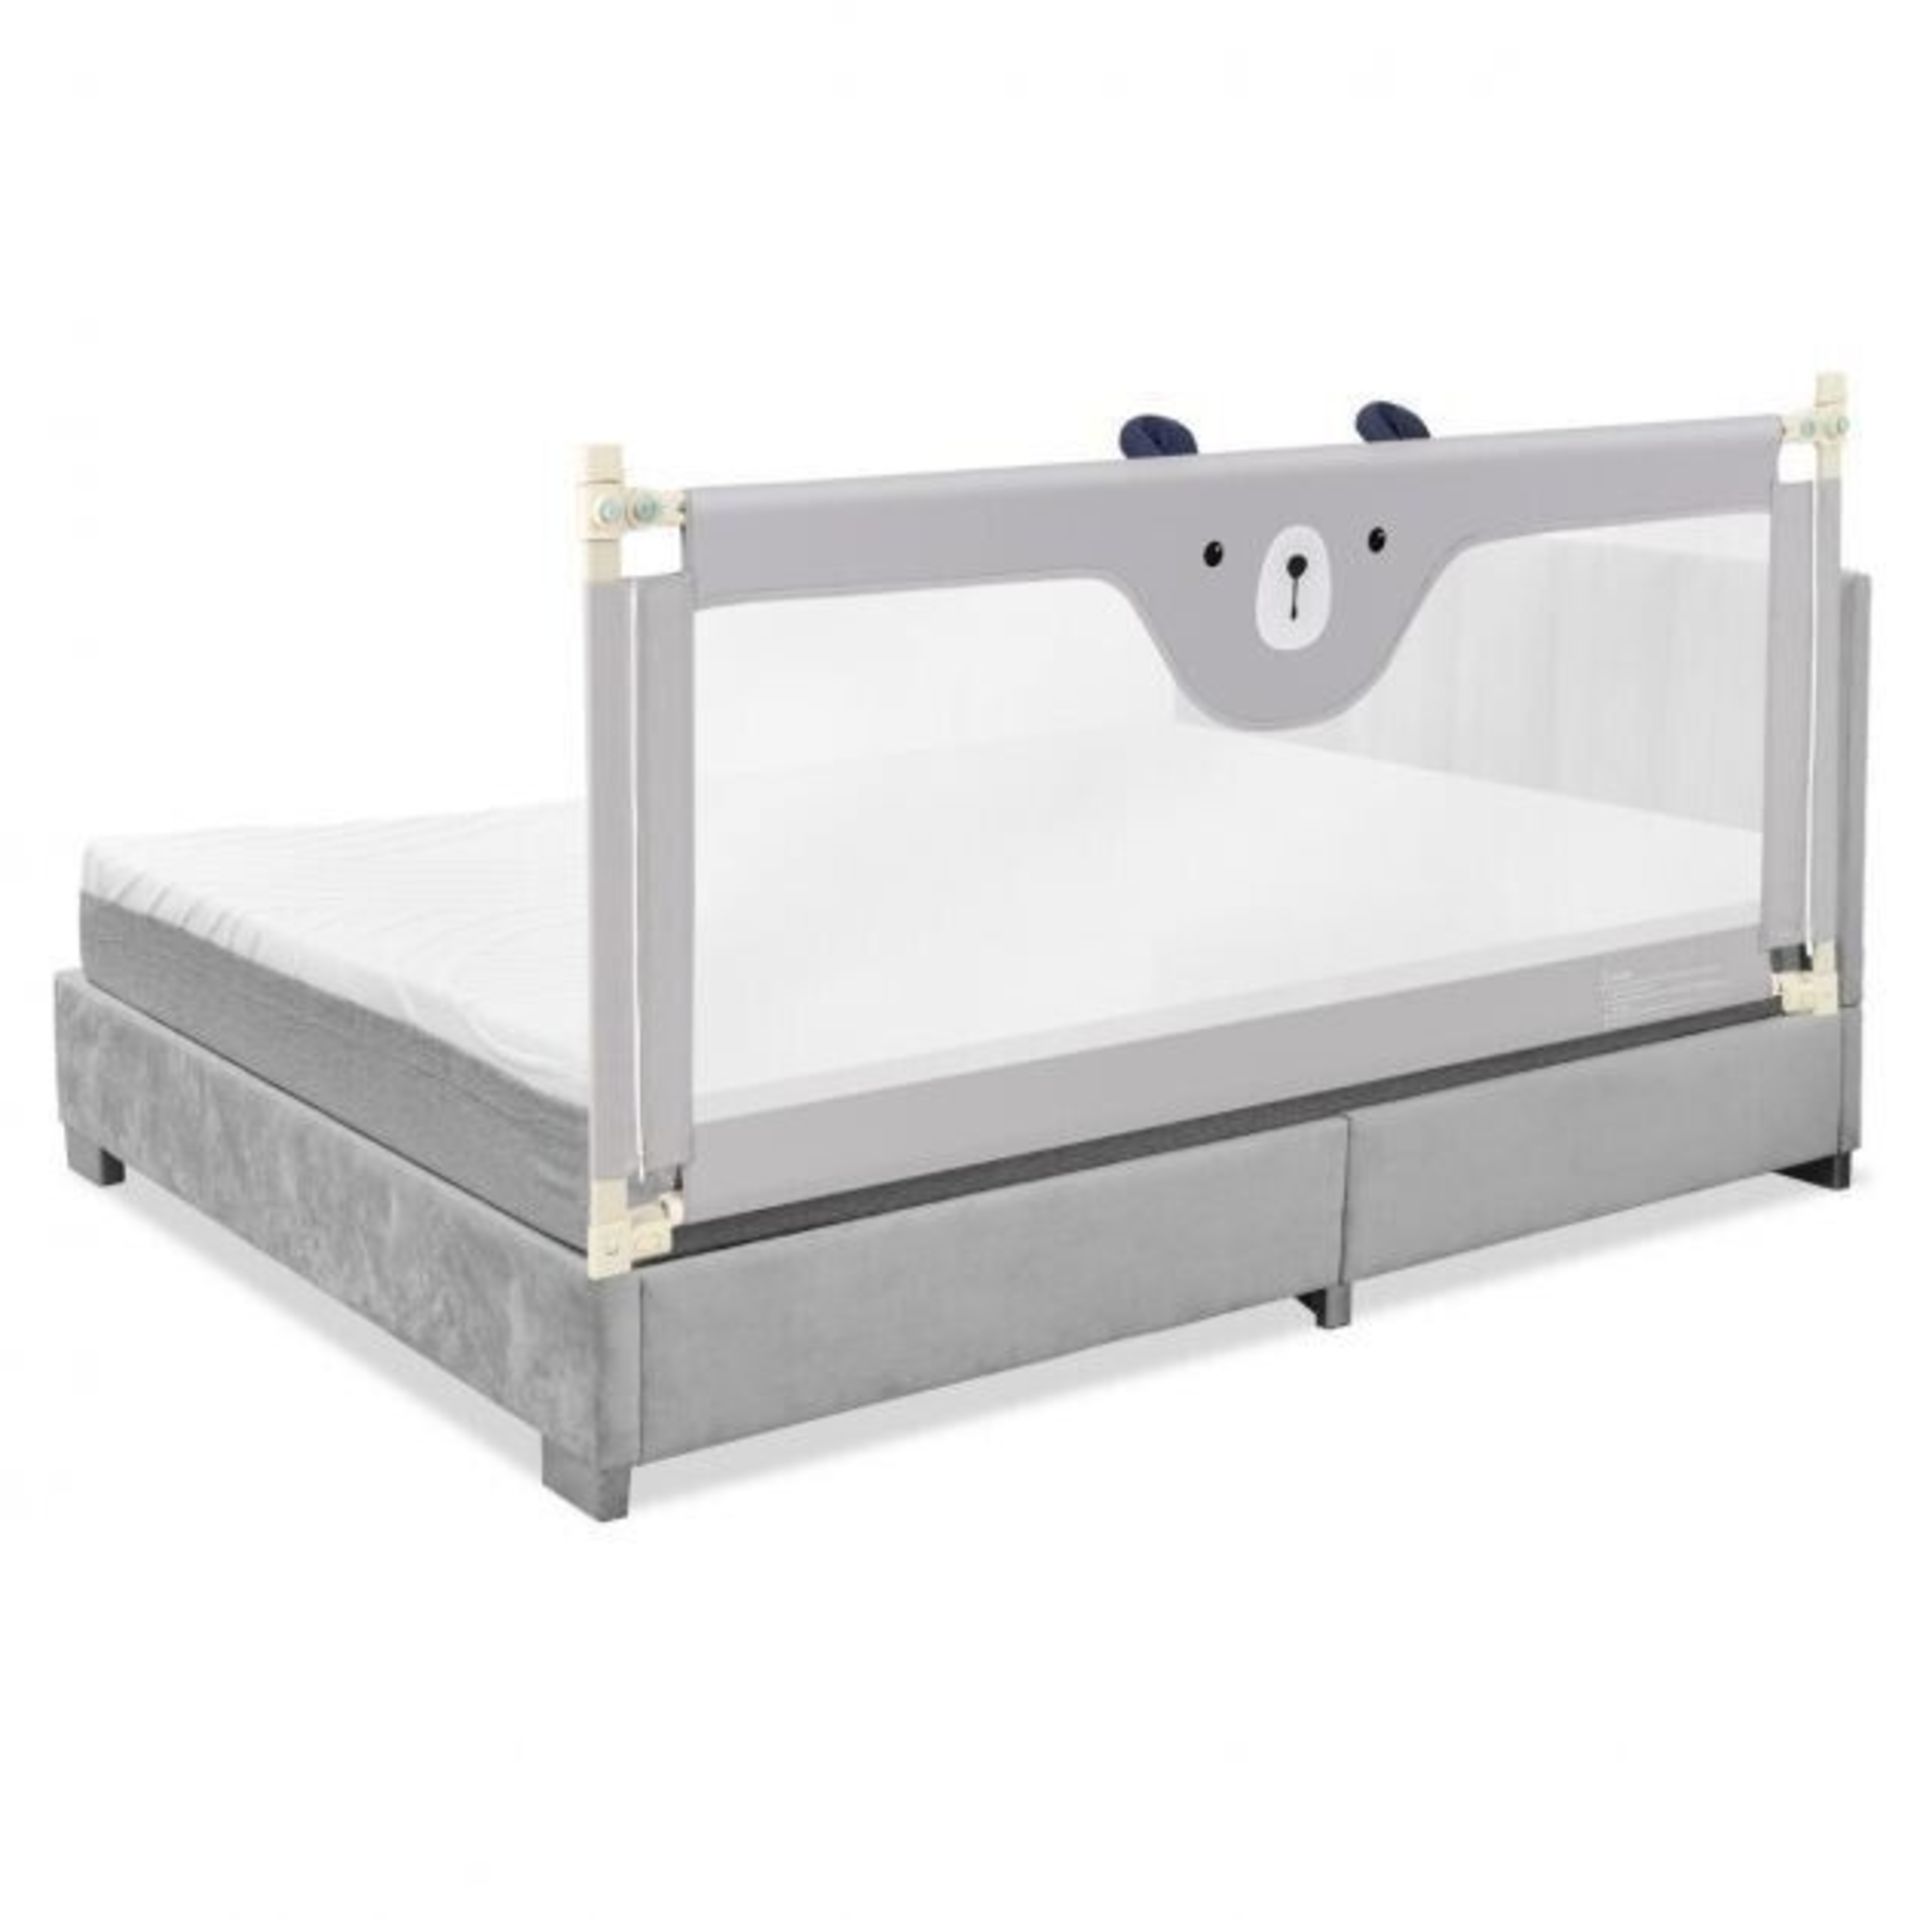 Todler bed protection grill - ER53